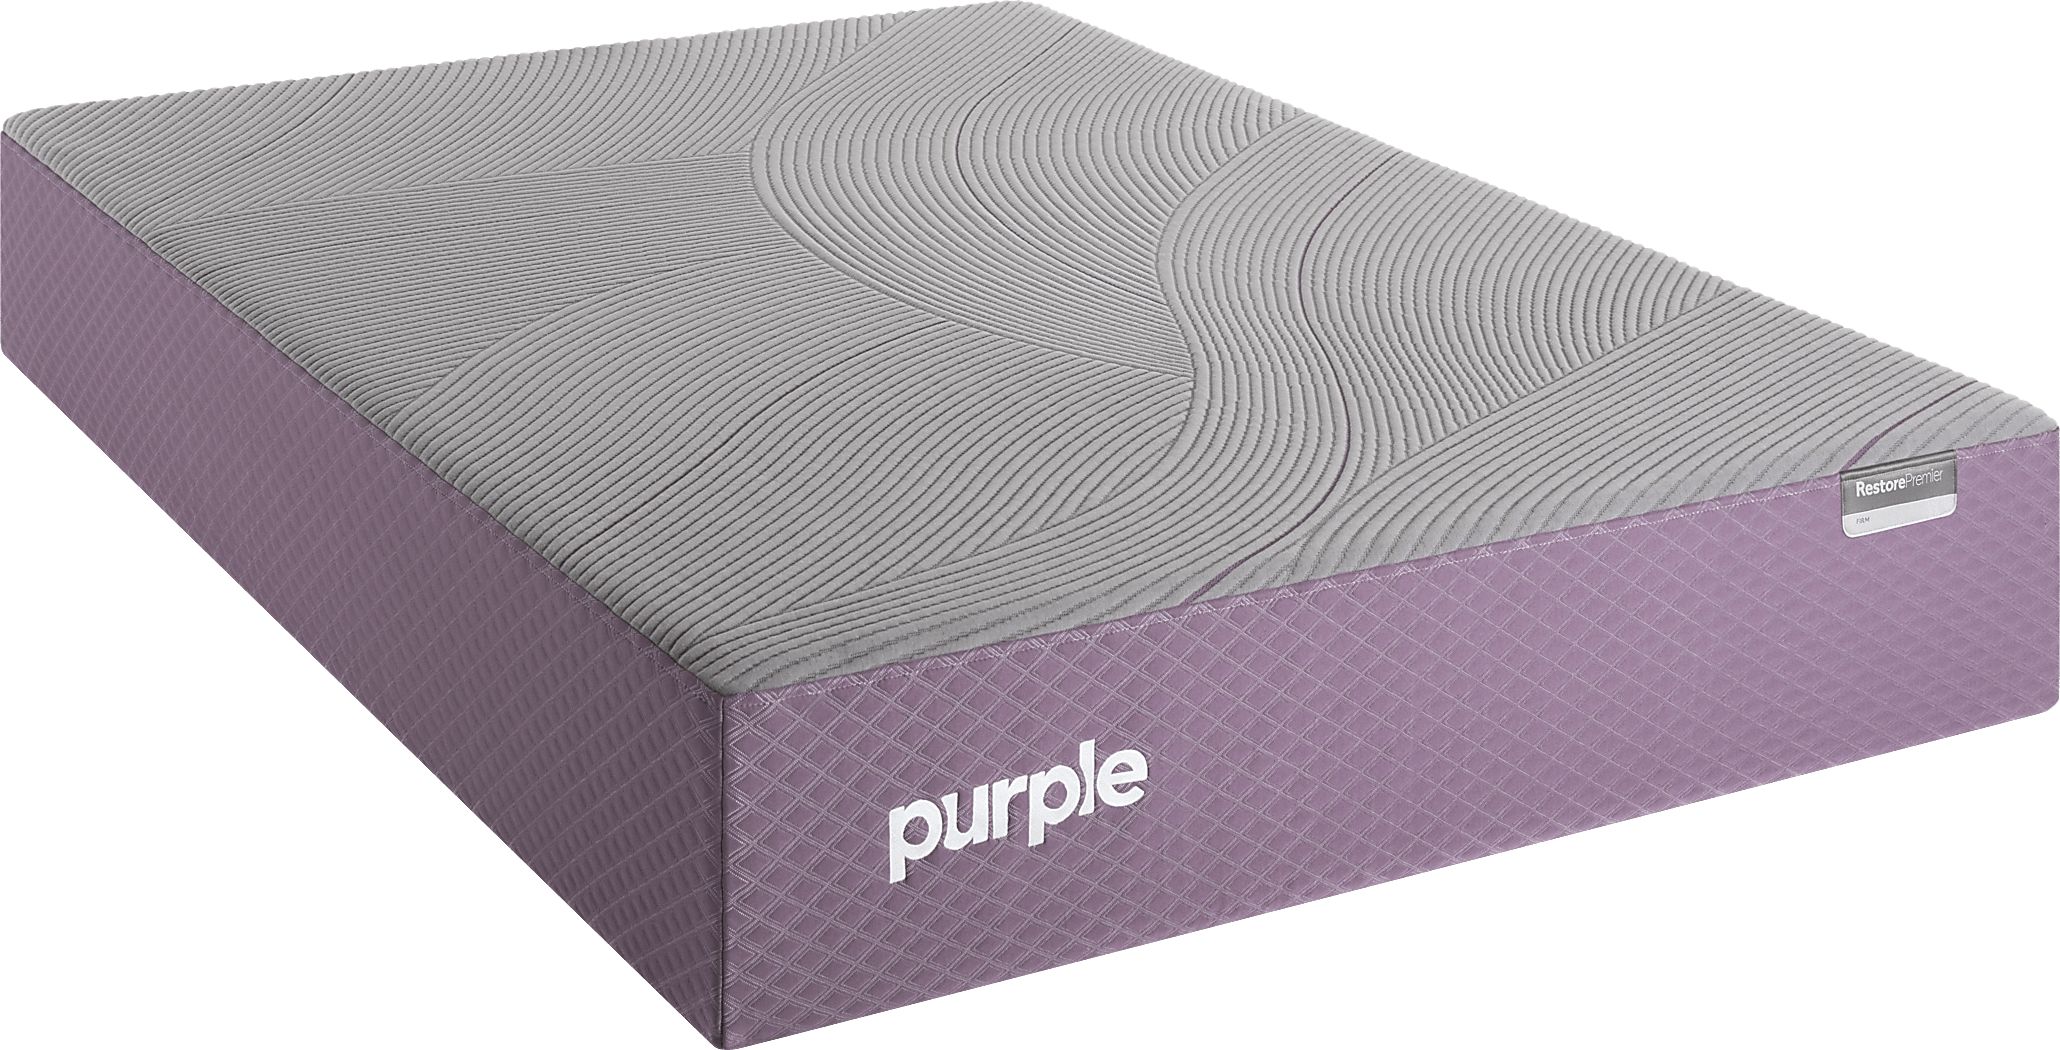 purple restore premier comparable mattress